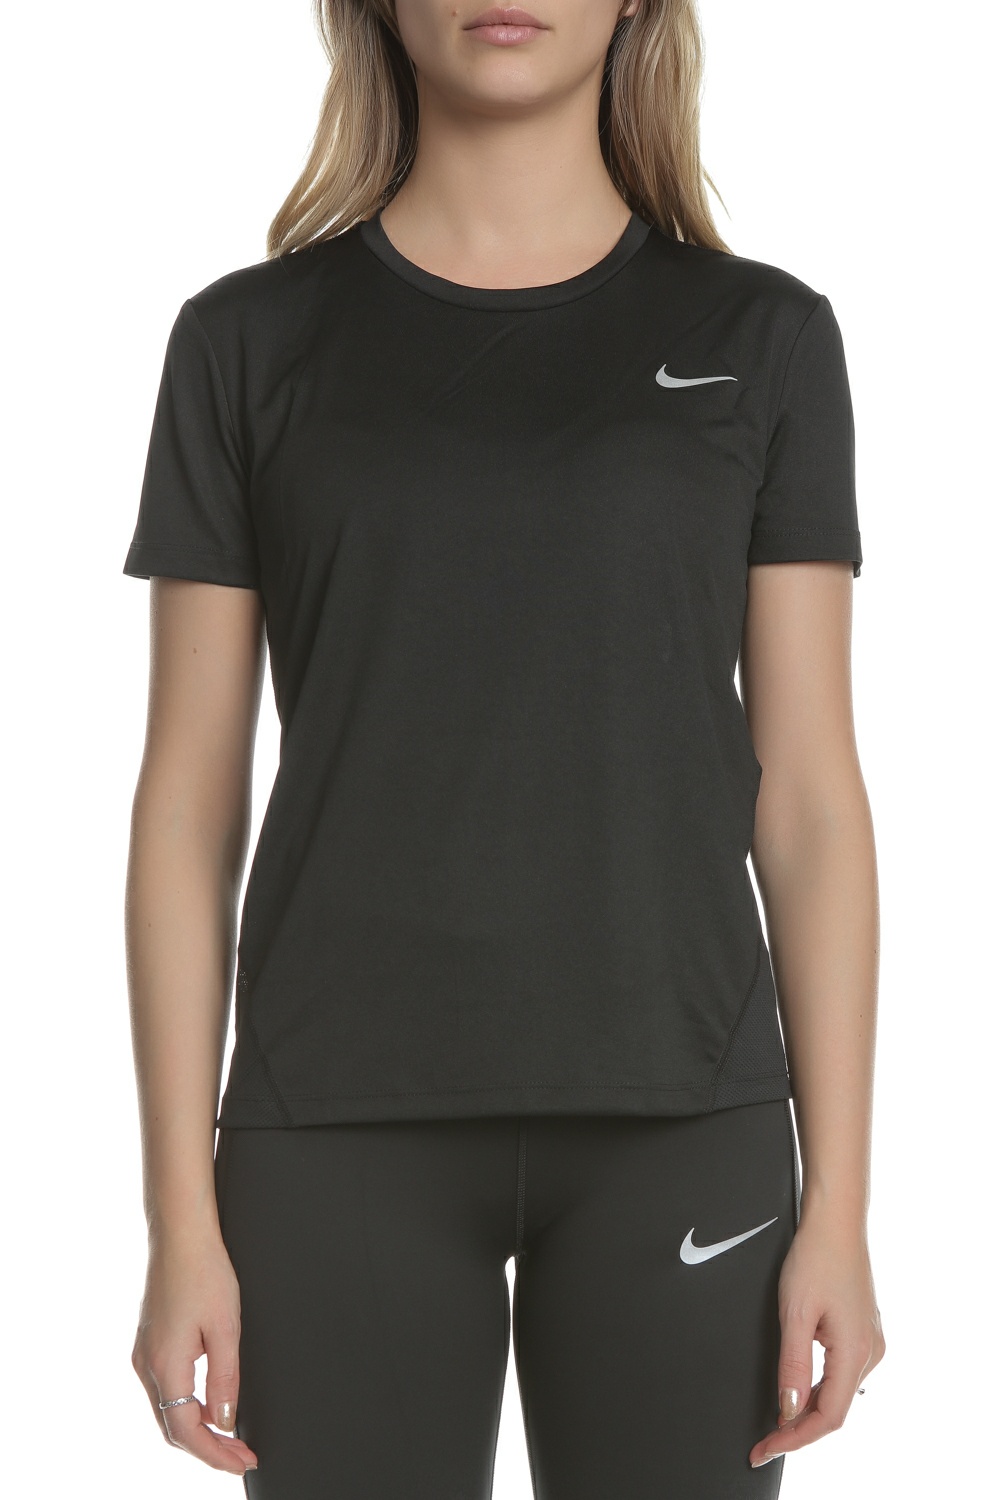 Γυναικεία/Ρούχα/Αθλητικά/T-shirt-Τοπ NIKE - Γυναικεία κοντομάνικη μπλούζα για τρέξιμο Nike Miler μαύρη